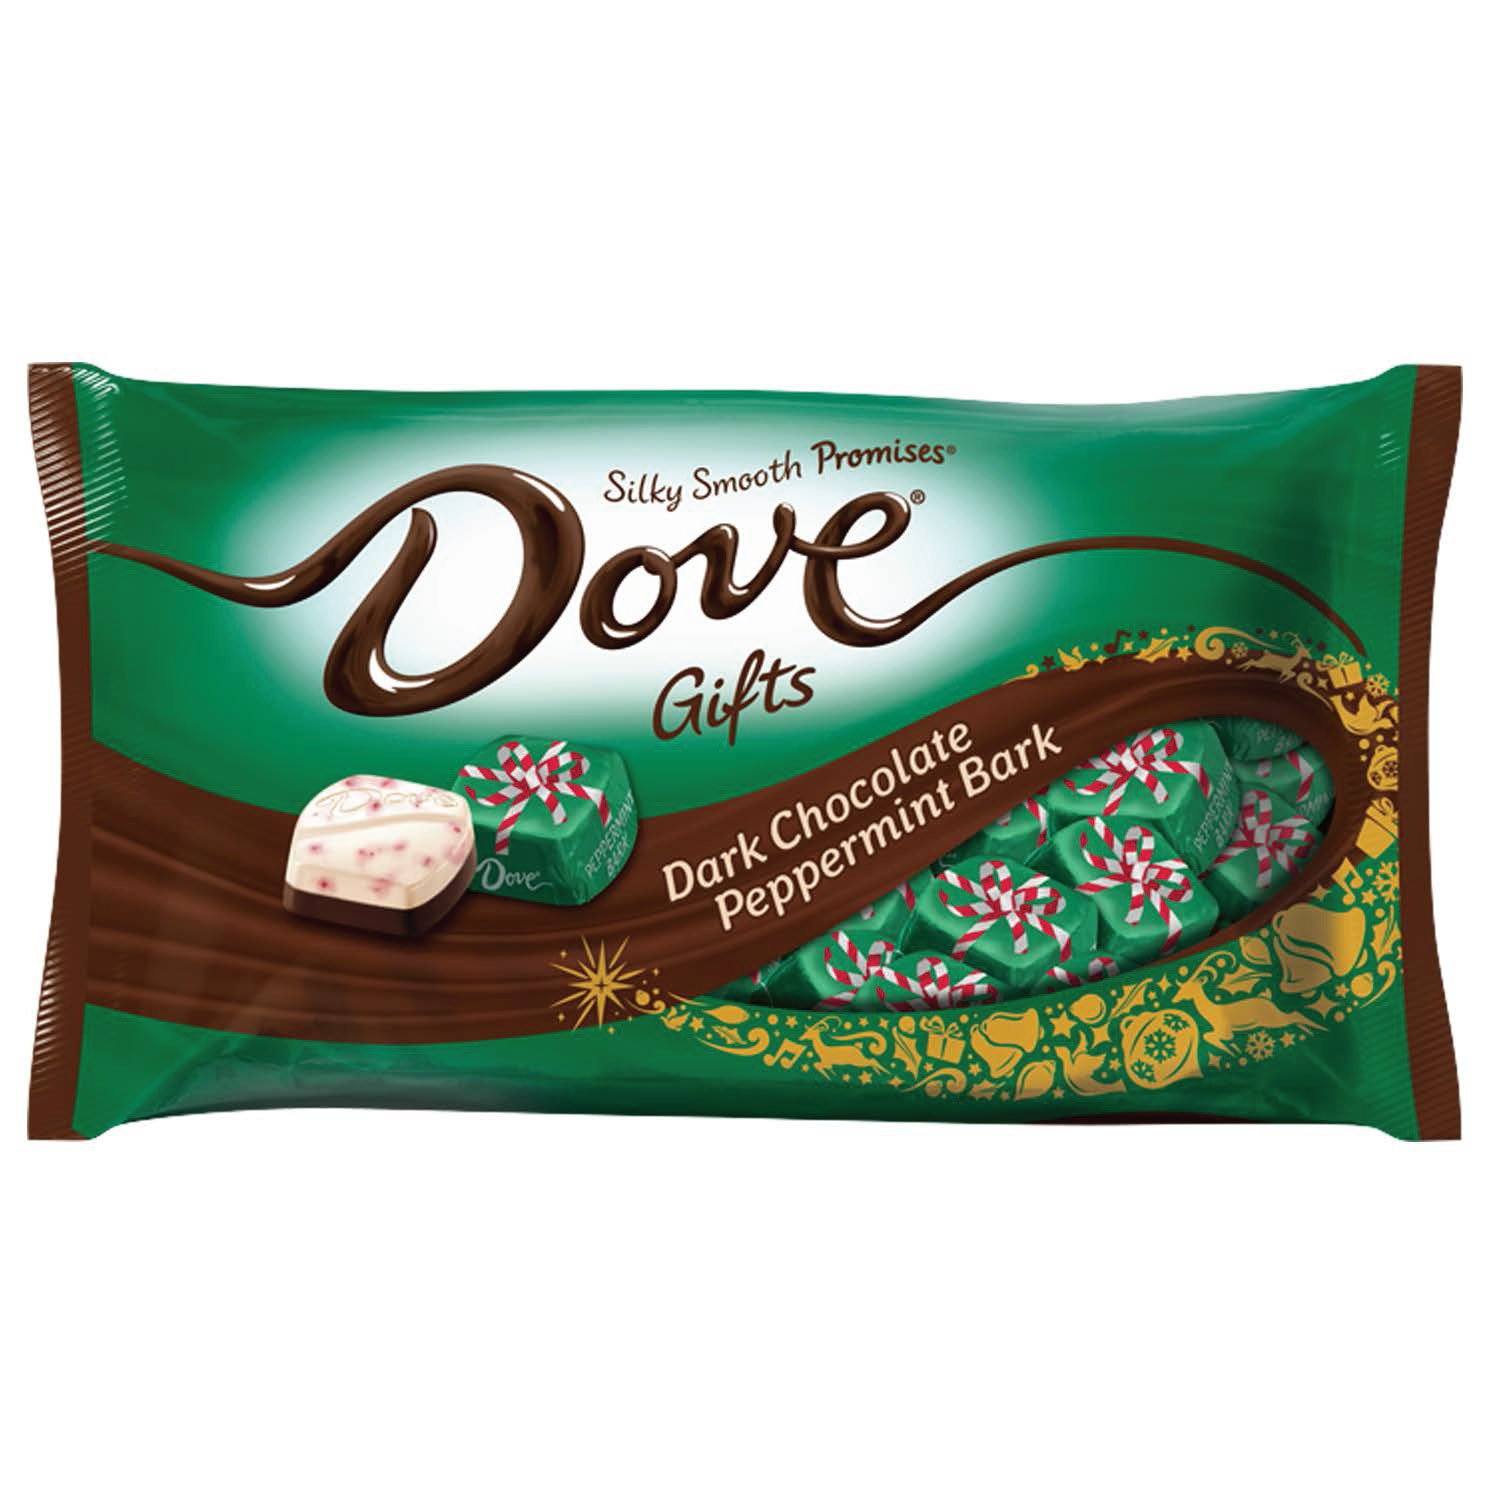 DOVE PROMISES Silky Smooth Chocolate Meltable Dove Dark Peppermint Bark 7.94 Ounce 